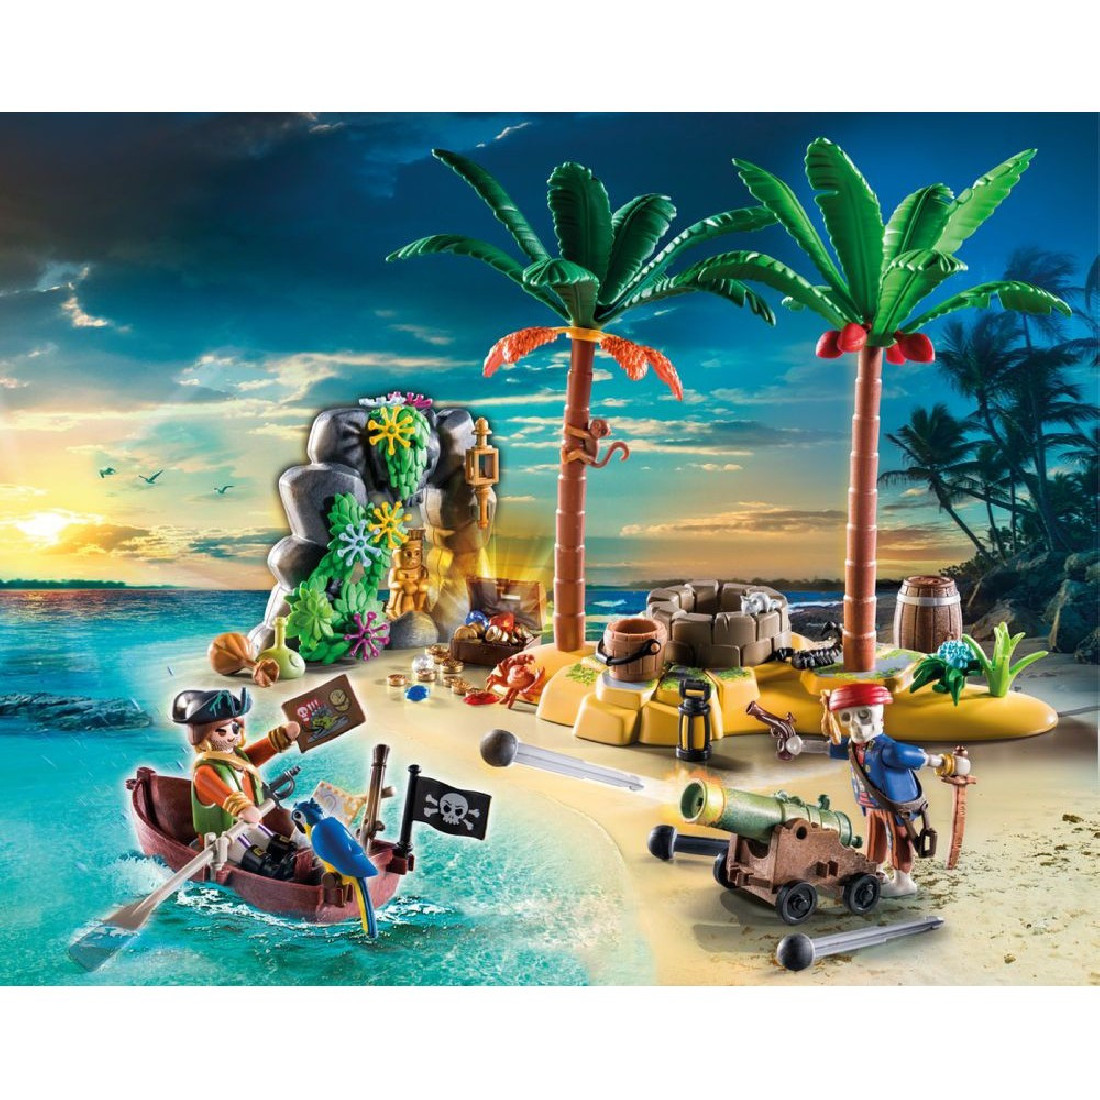 Λαμπάδα Πειρατικό νησί θησαυρού 70962 Playmobil